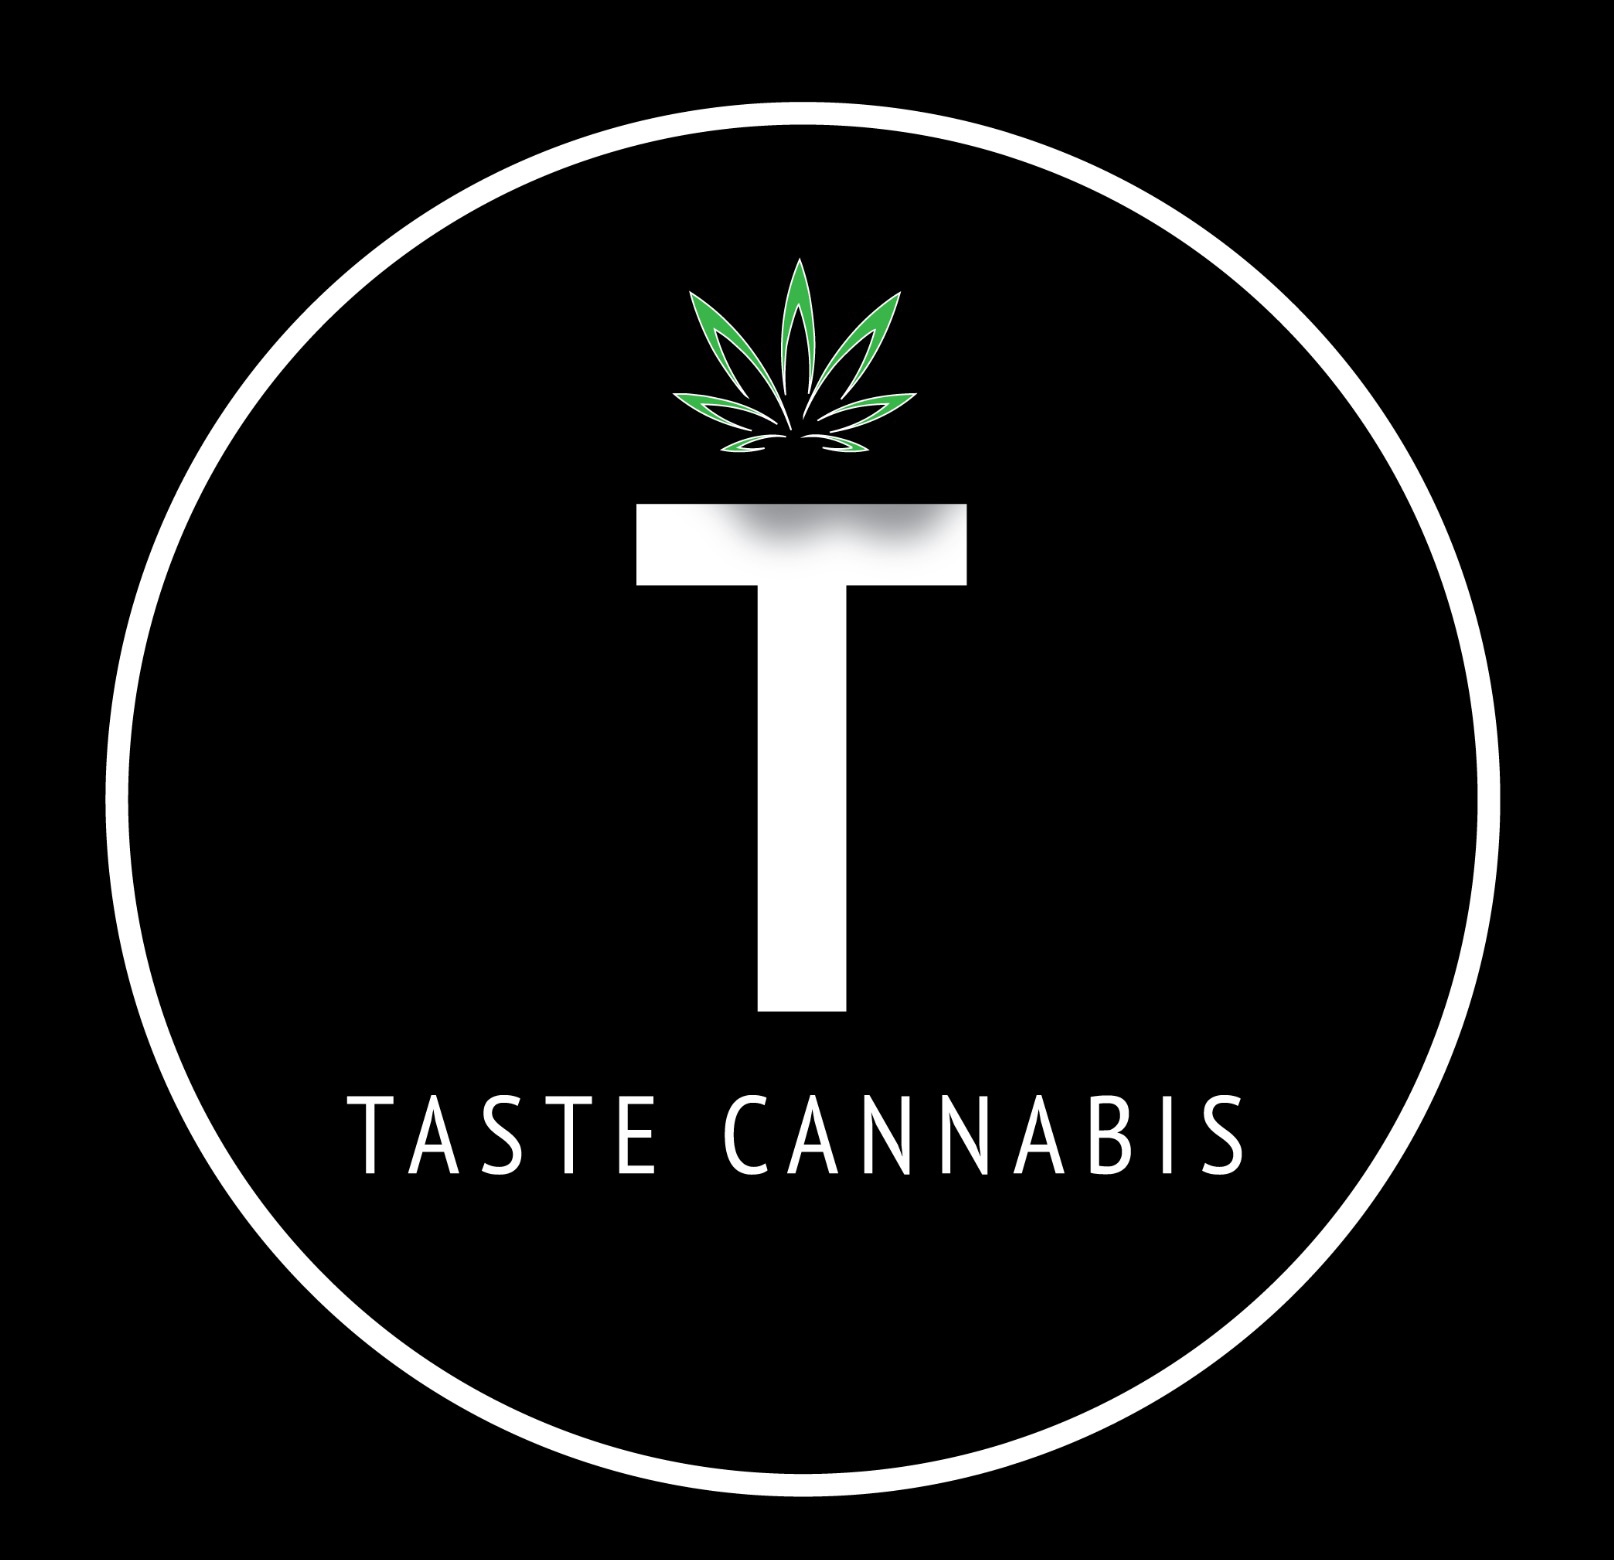 Taste cannabis